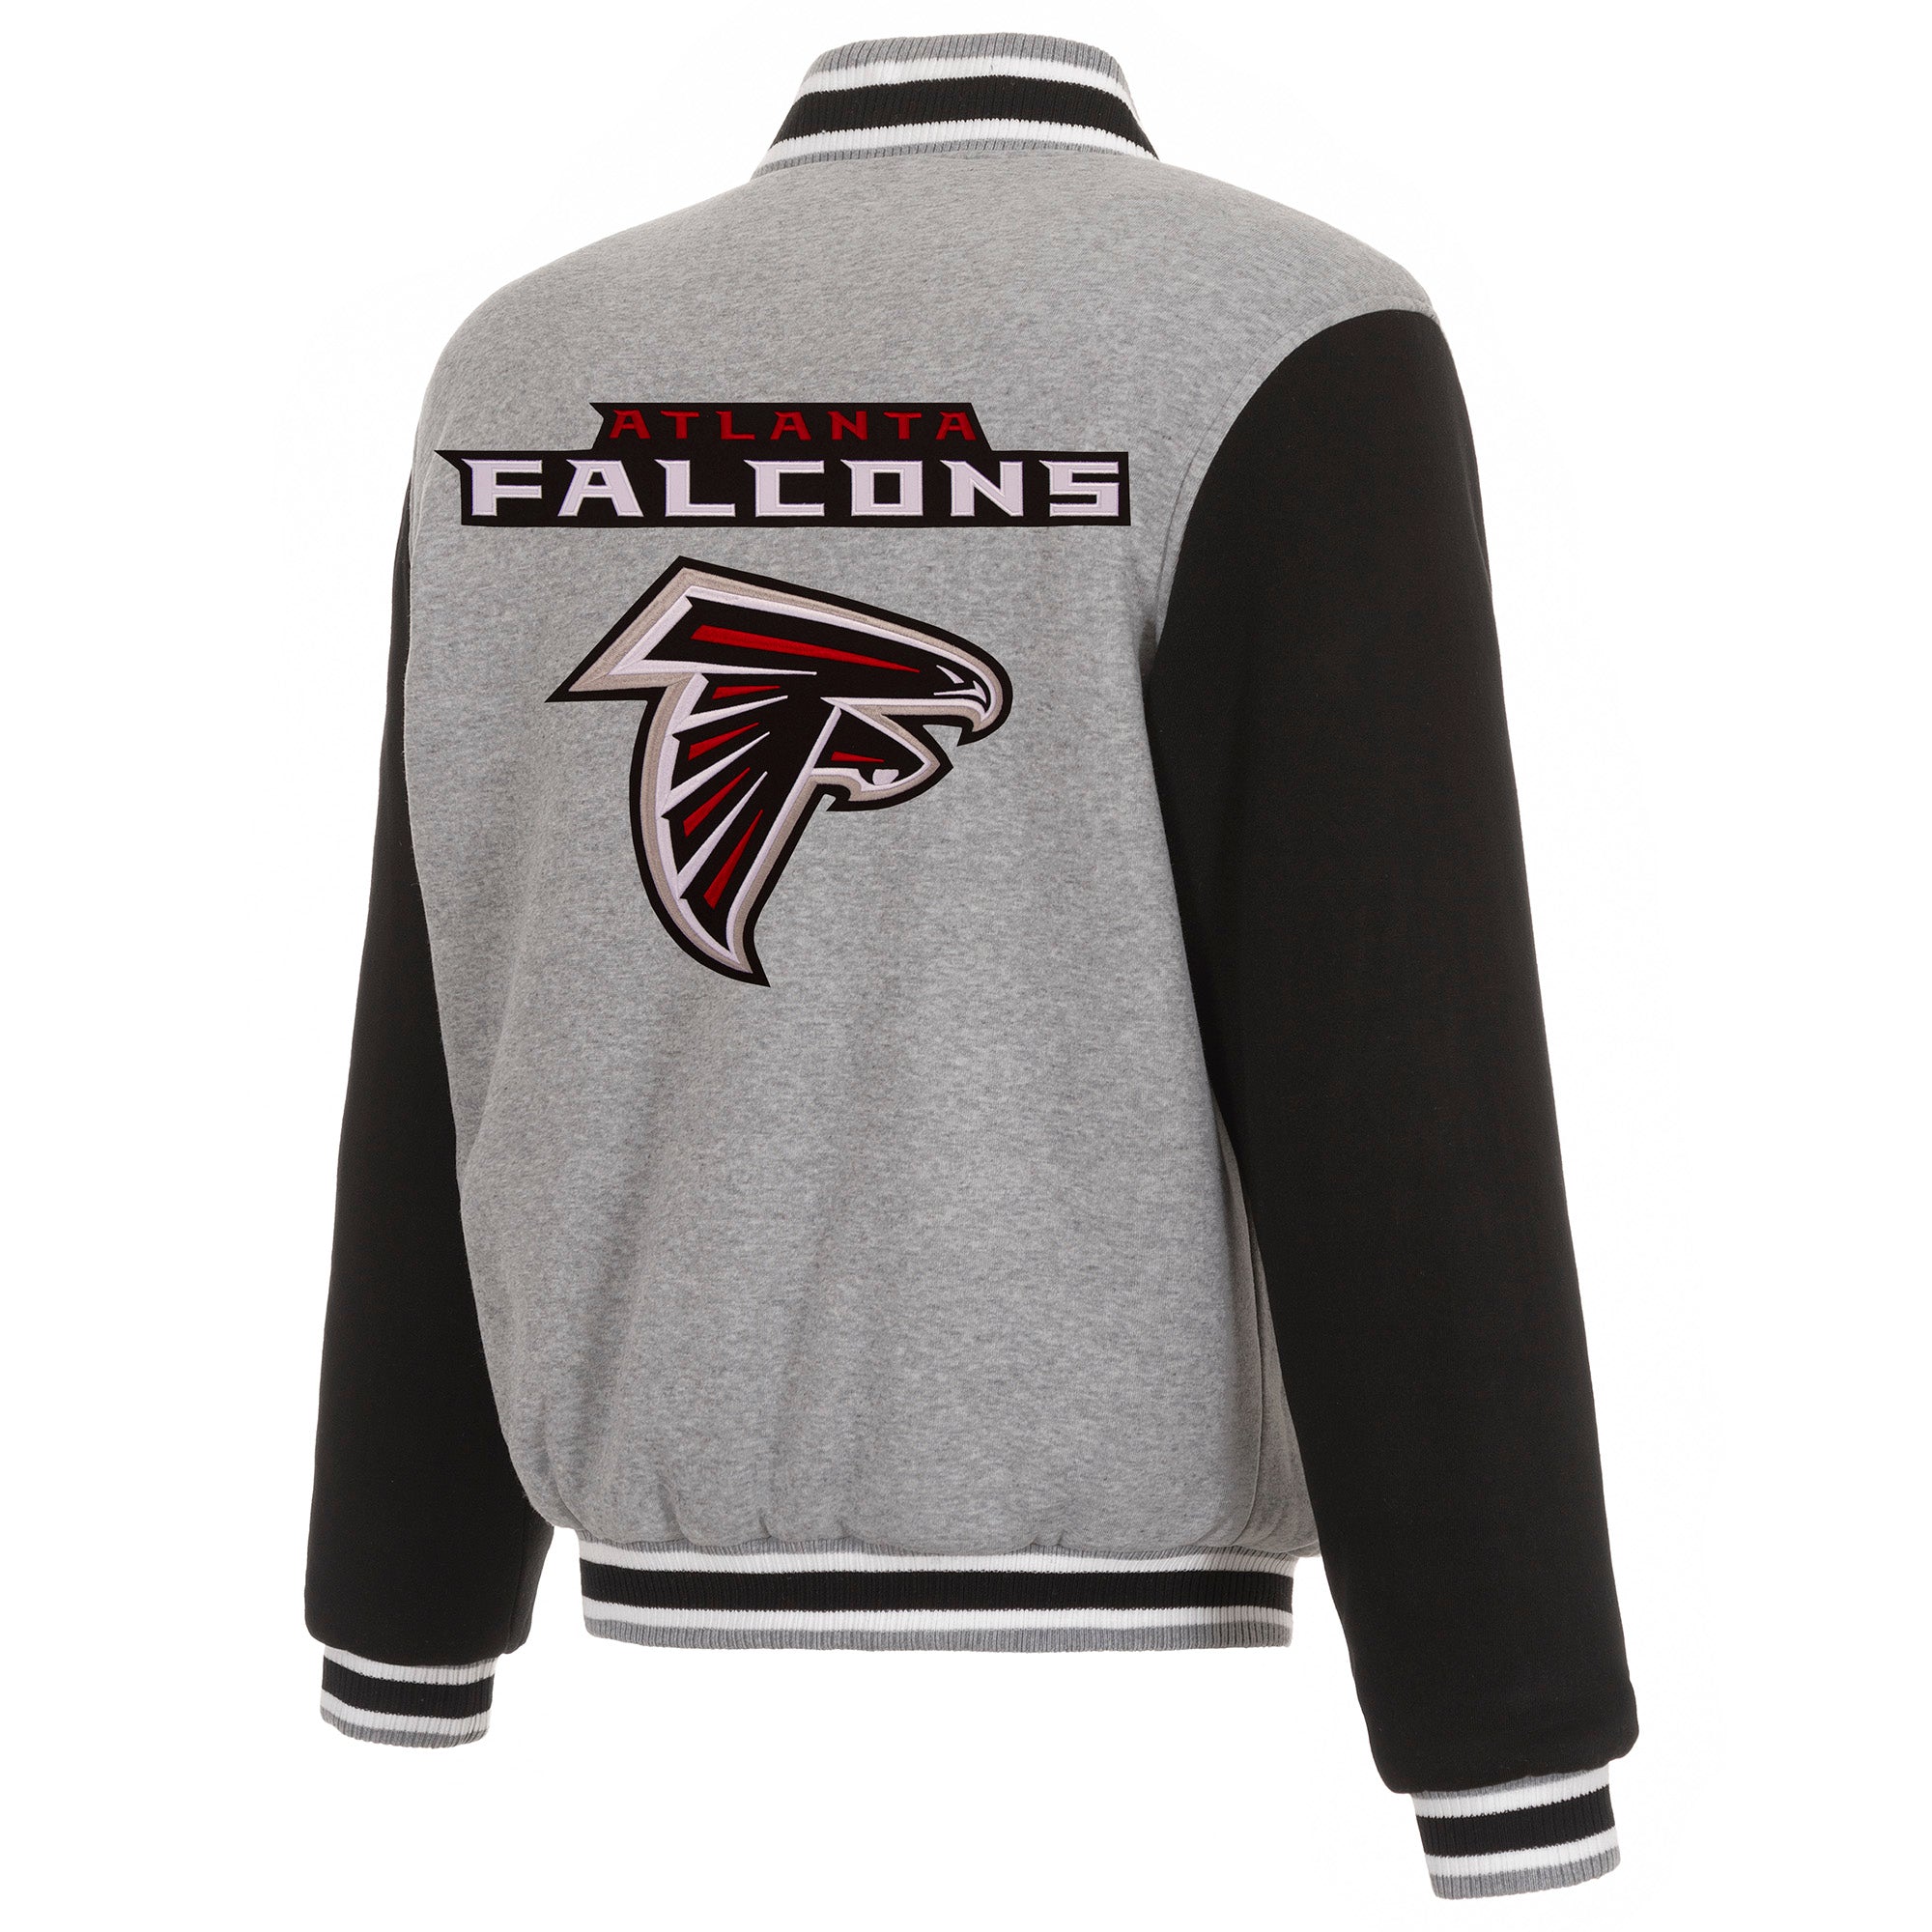 Atlanta Falcons Two-Tone Reversible Fleece Jacket - Gray/Black